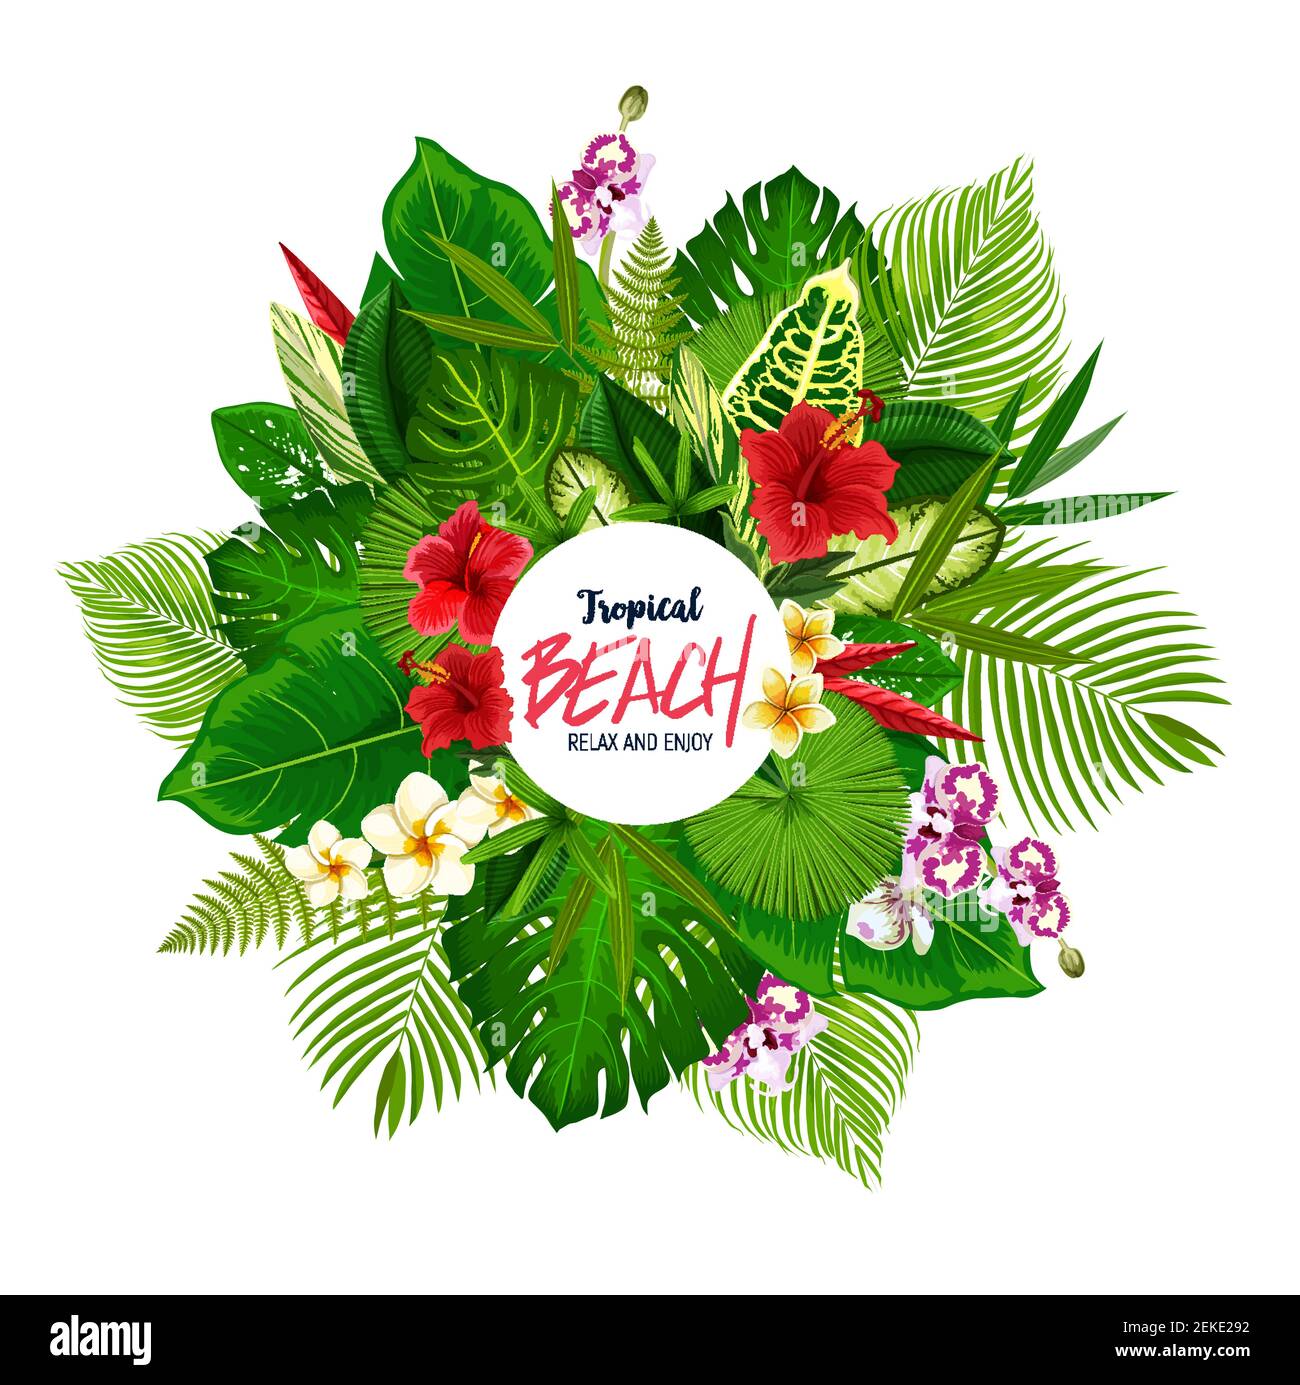 Affiche tropicale sur la plage avec cadre de feuilles de palmier et fleurs hawaïennes. Monstère verte, bananiers et fougères, hibiscus, plumeria et fleurs d'orchidées roun Illustration de Vecteur